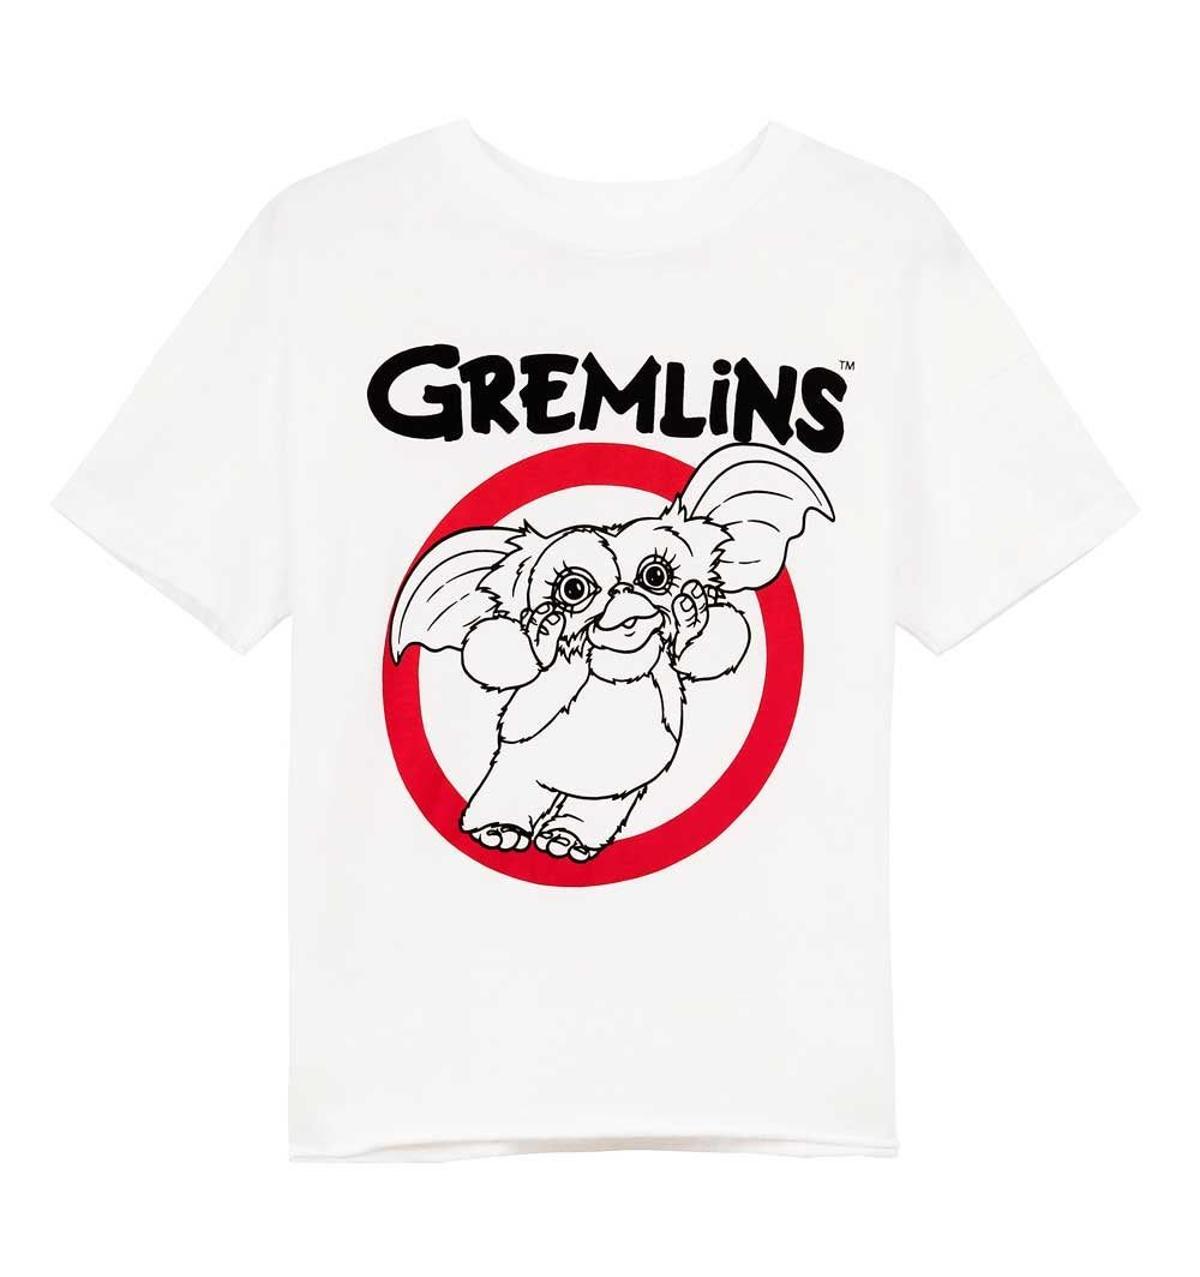 Camiseta de los Gremlins de Bershka (Precio: 12, 99 euros)